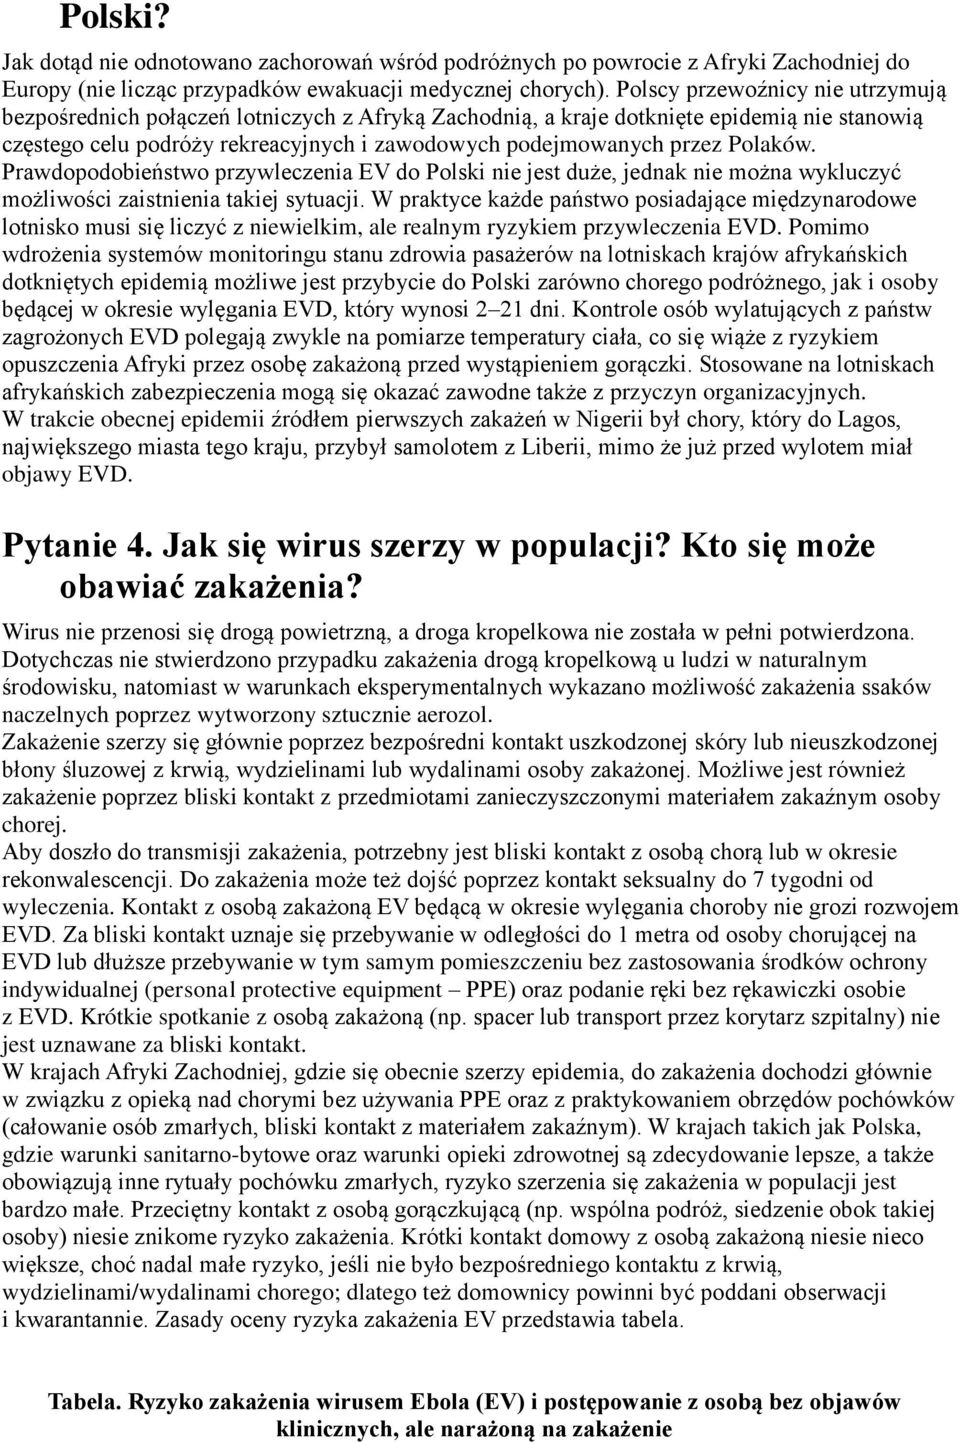 Polaków. Prawdopodobieństwo przywleczenia EV do Polski nie jest duże, jednak nie można wykluczyć możliwości zaistnienia takiej sytuacji.